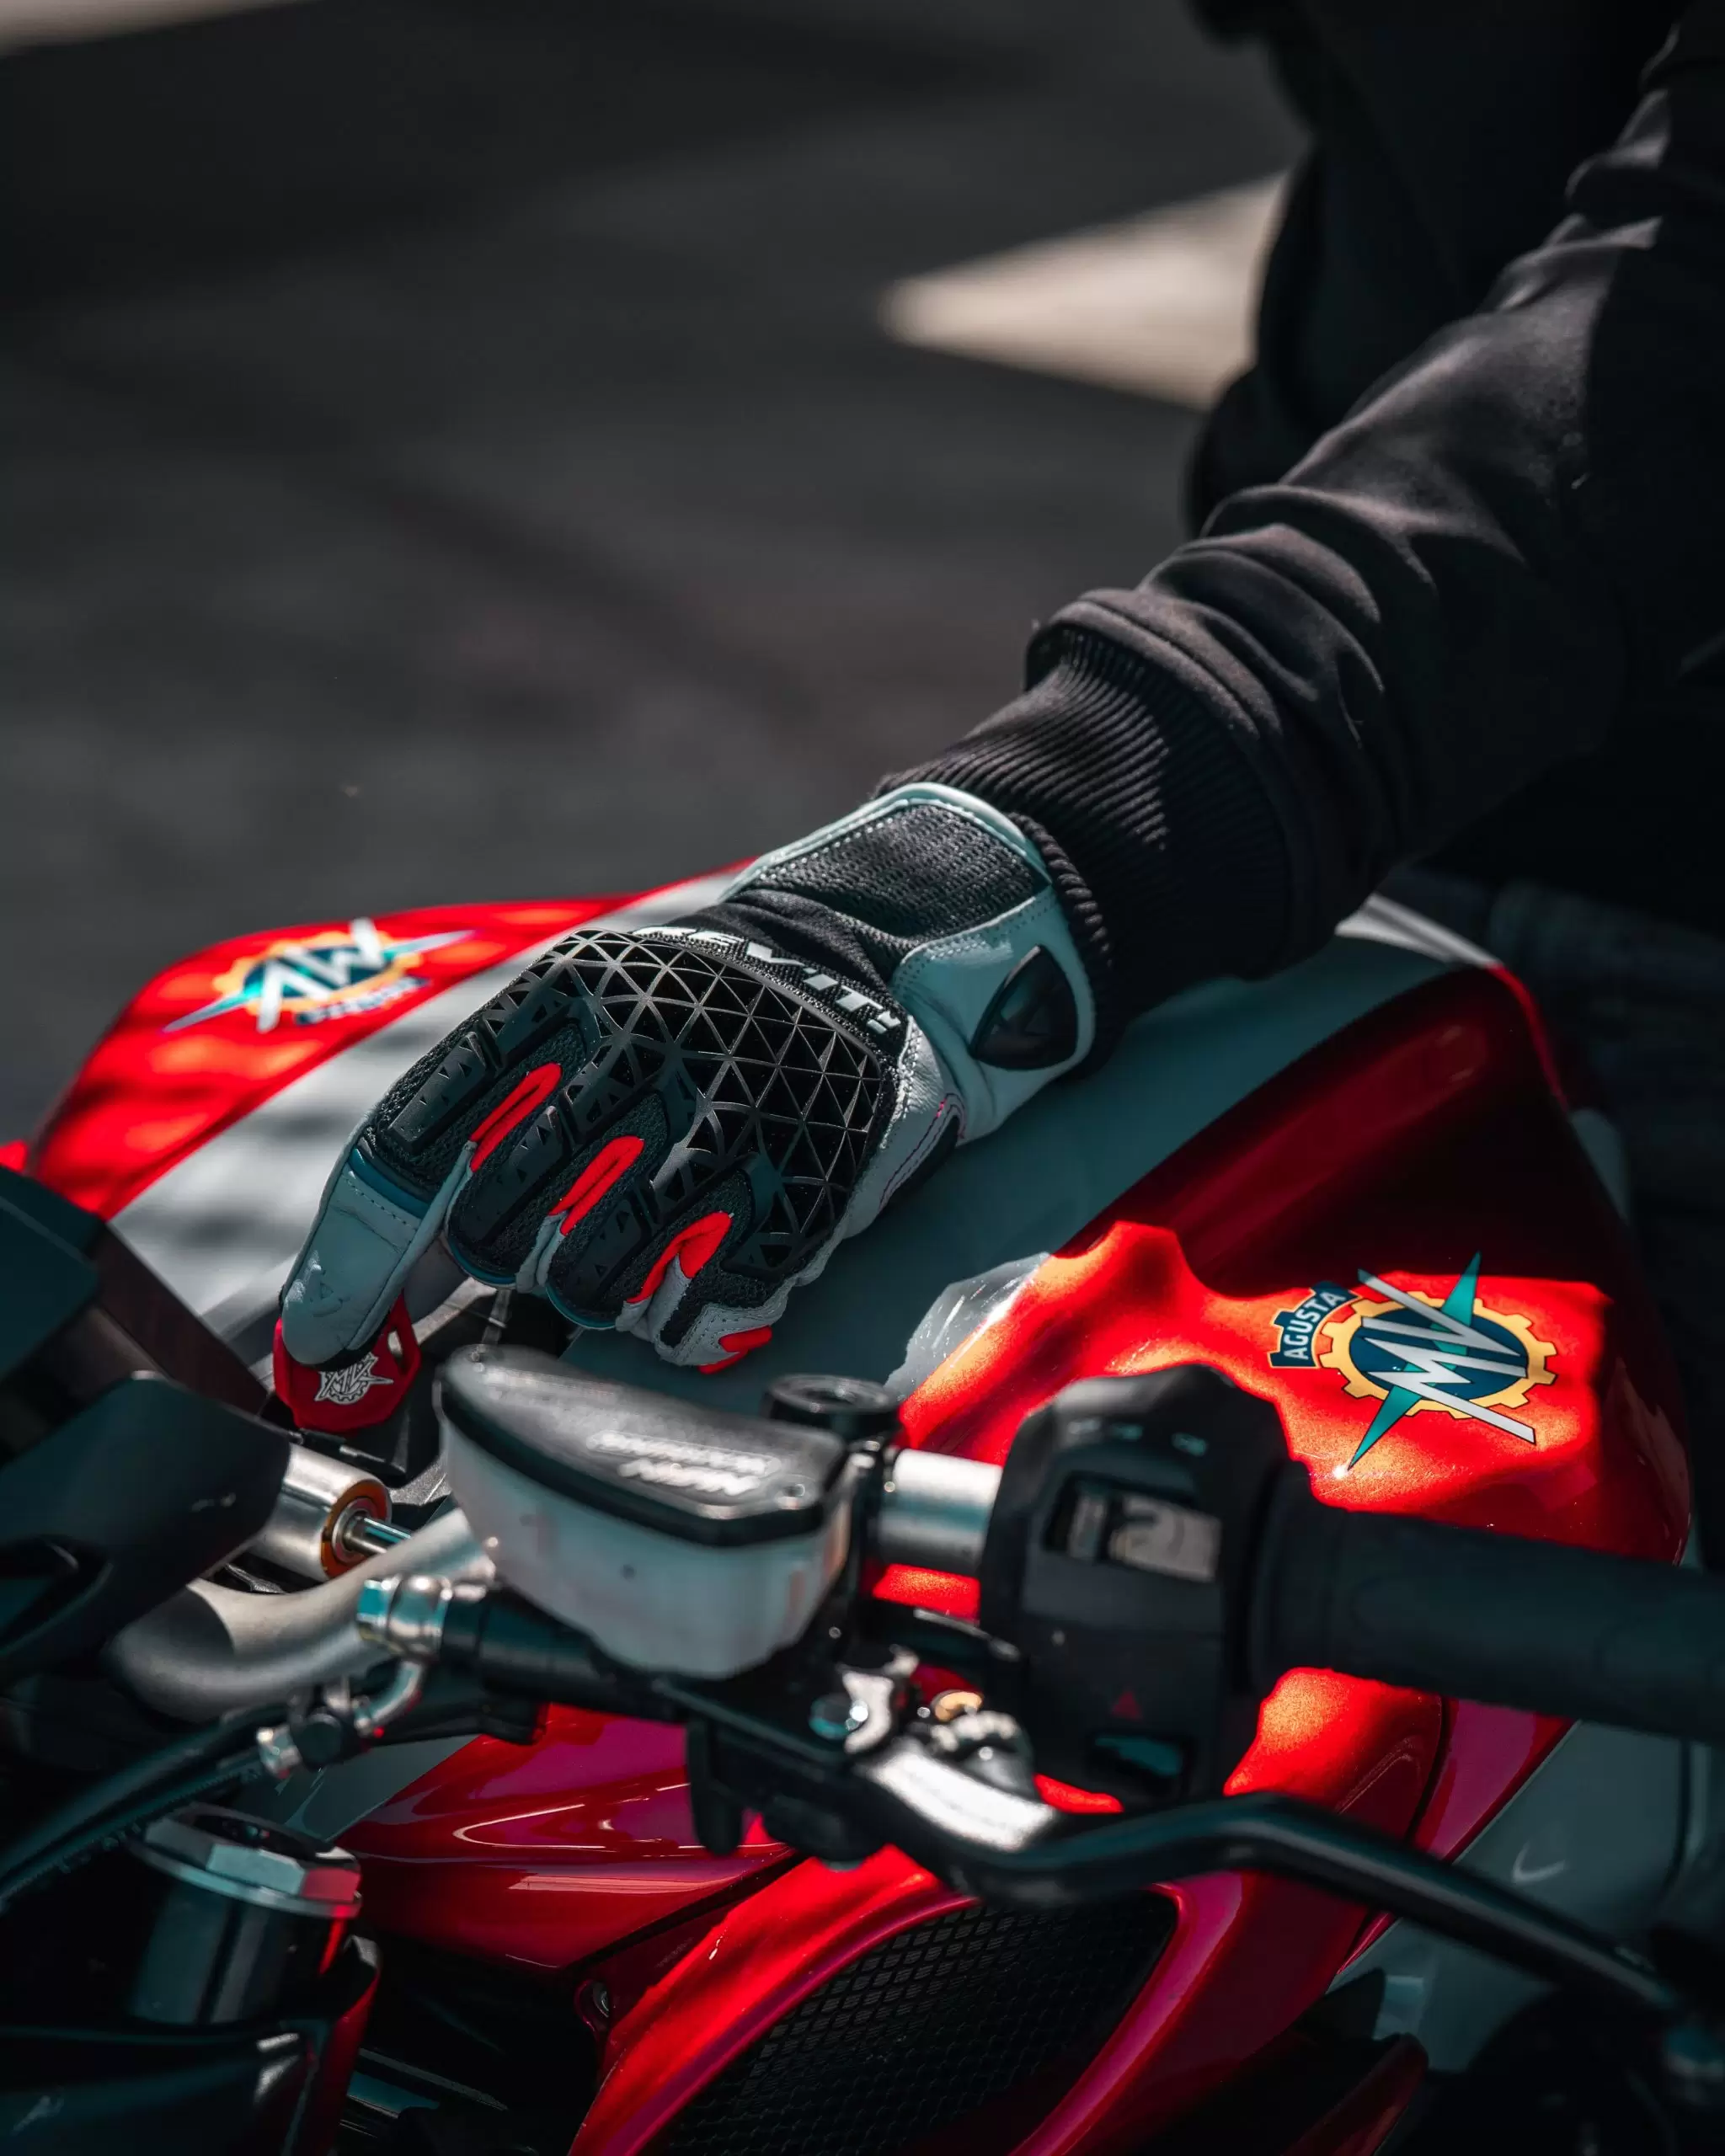 omdraaien verrassing Pebish Top 5 zomer motorhandschoenen 2021 - MKC Moto